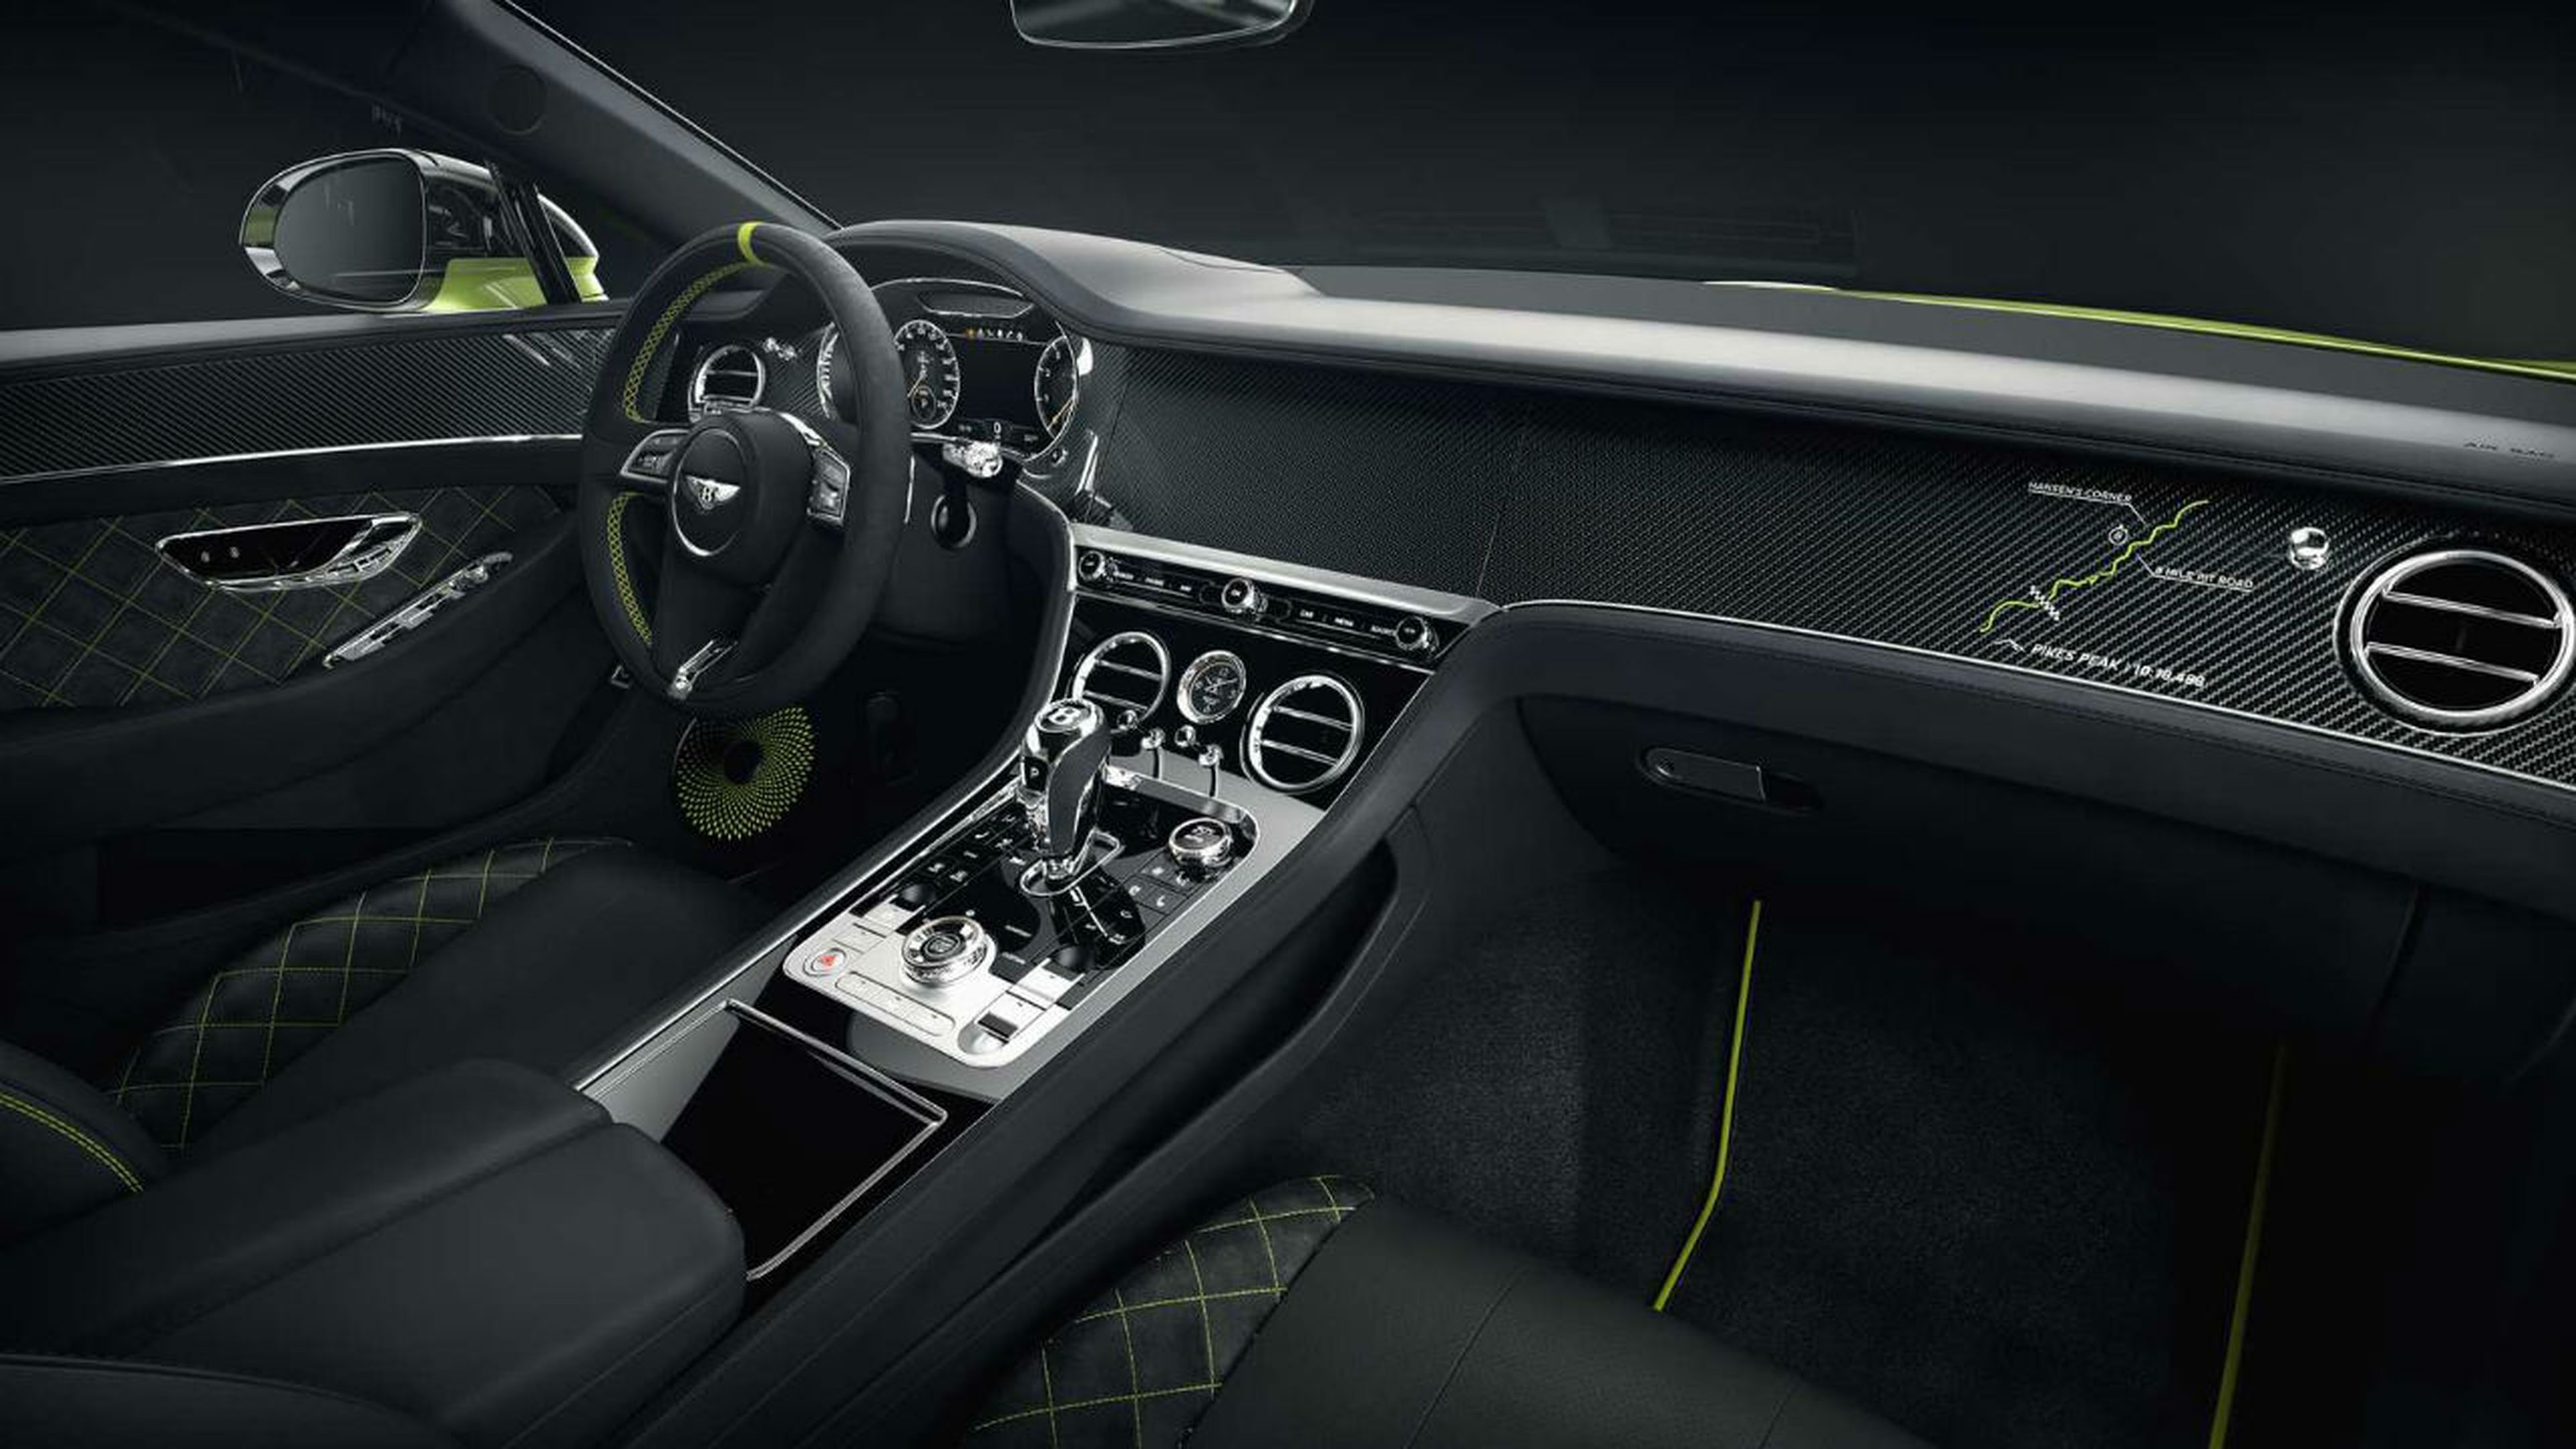 Los detalles en fibra de carbono tienen un gran protagonismo en el interior del Bentley Continental GT Pikes Peak Edition.